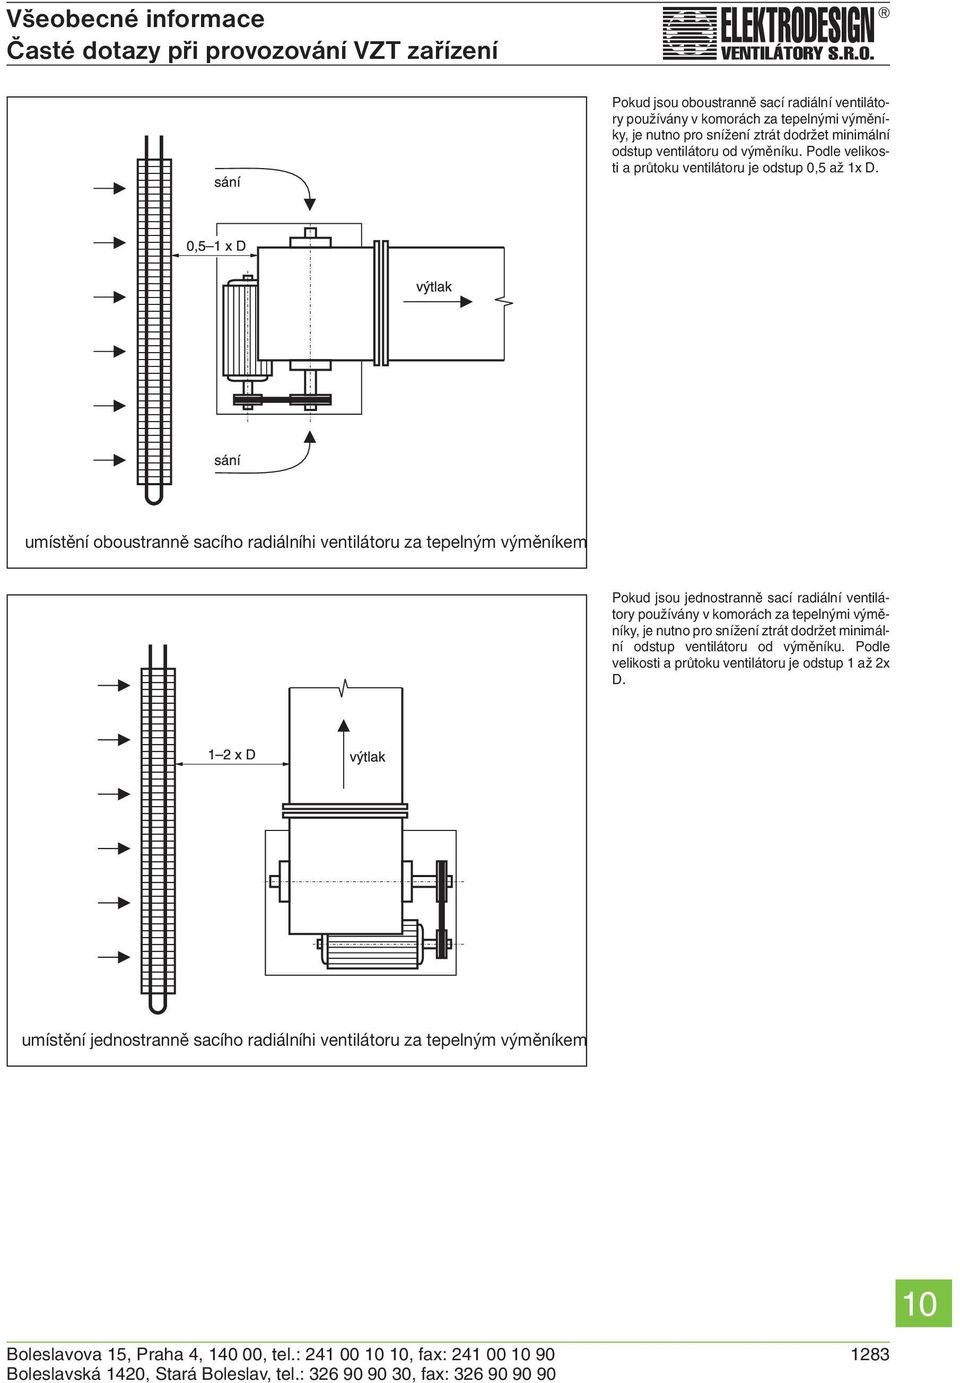 umístění oboustranně sacího radiálníhi ventilátoru za tepelným výměníkem Pokud jsou jednostranně sací radiální ventilátory používány v komorách za tepelnými výměníky, je nutno pro